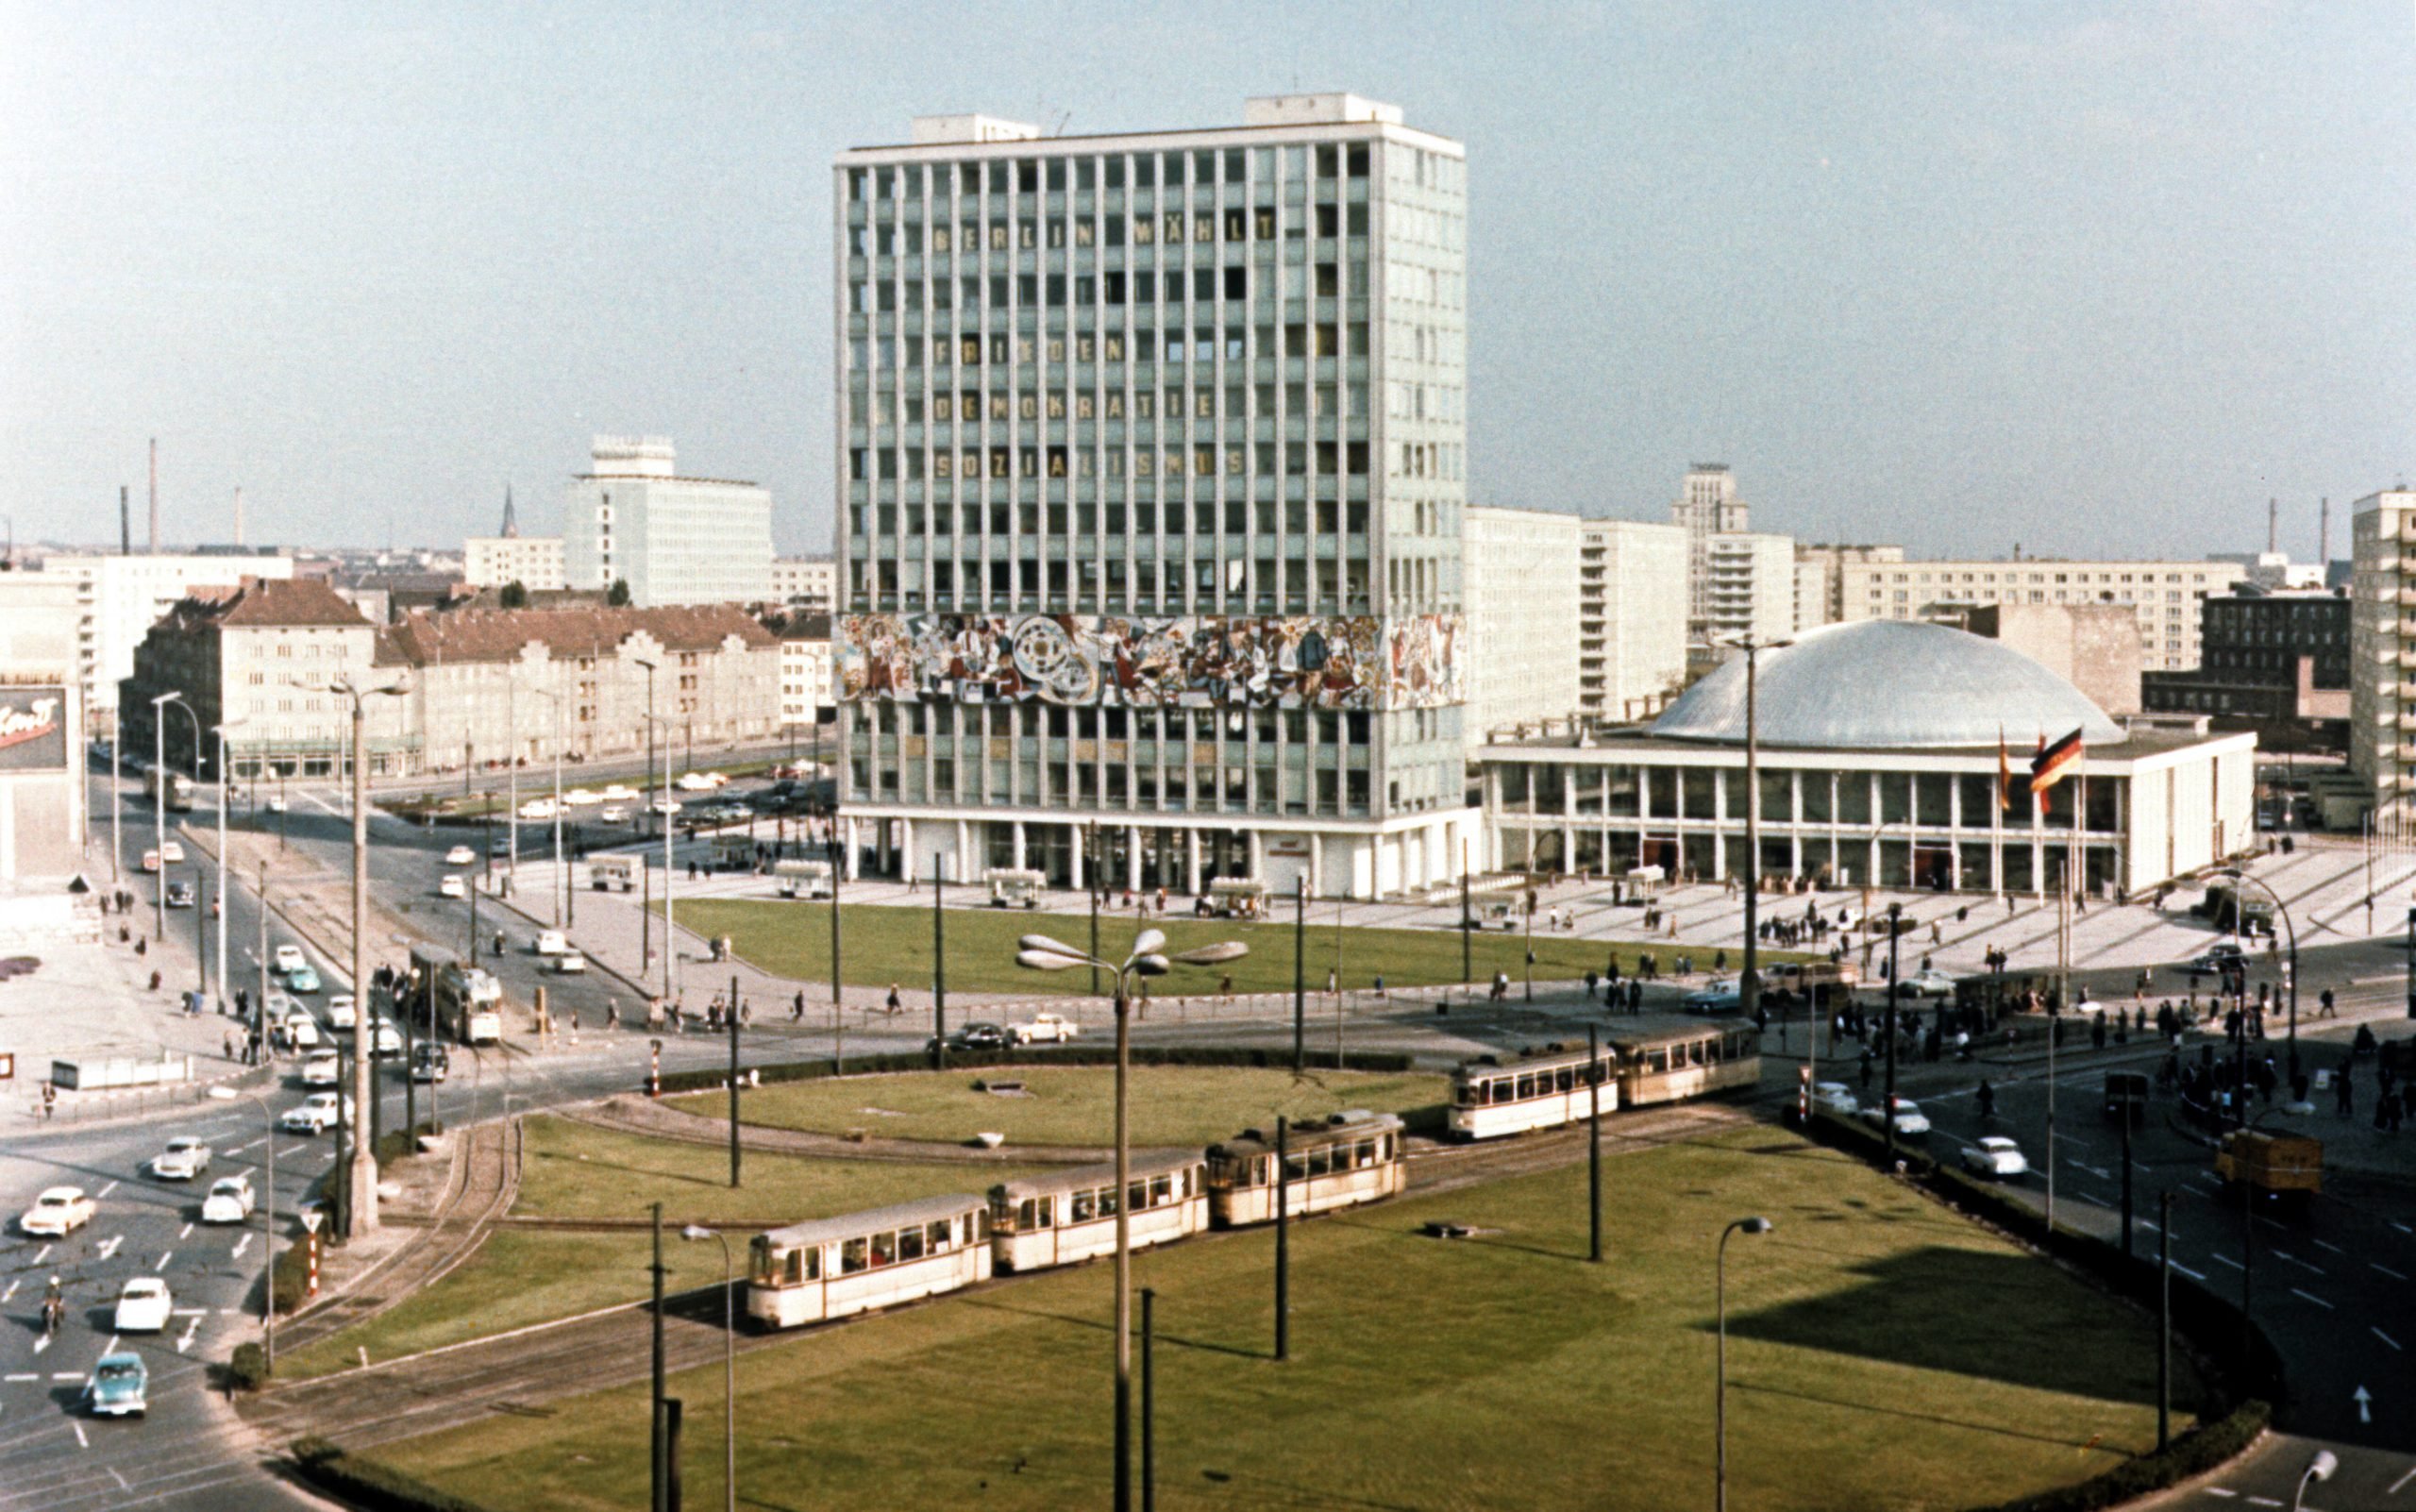 Straßenbahn in Berlin: Haus des Lehrers und Kongresshalle auf dem Alexanderplatz, 1965. Foto: Imago/Gerhard Leber